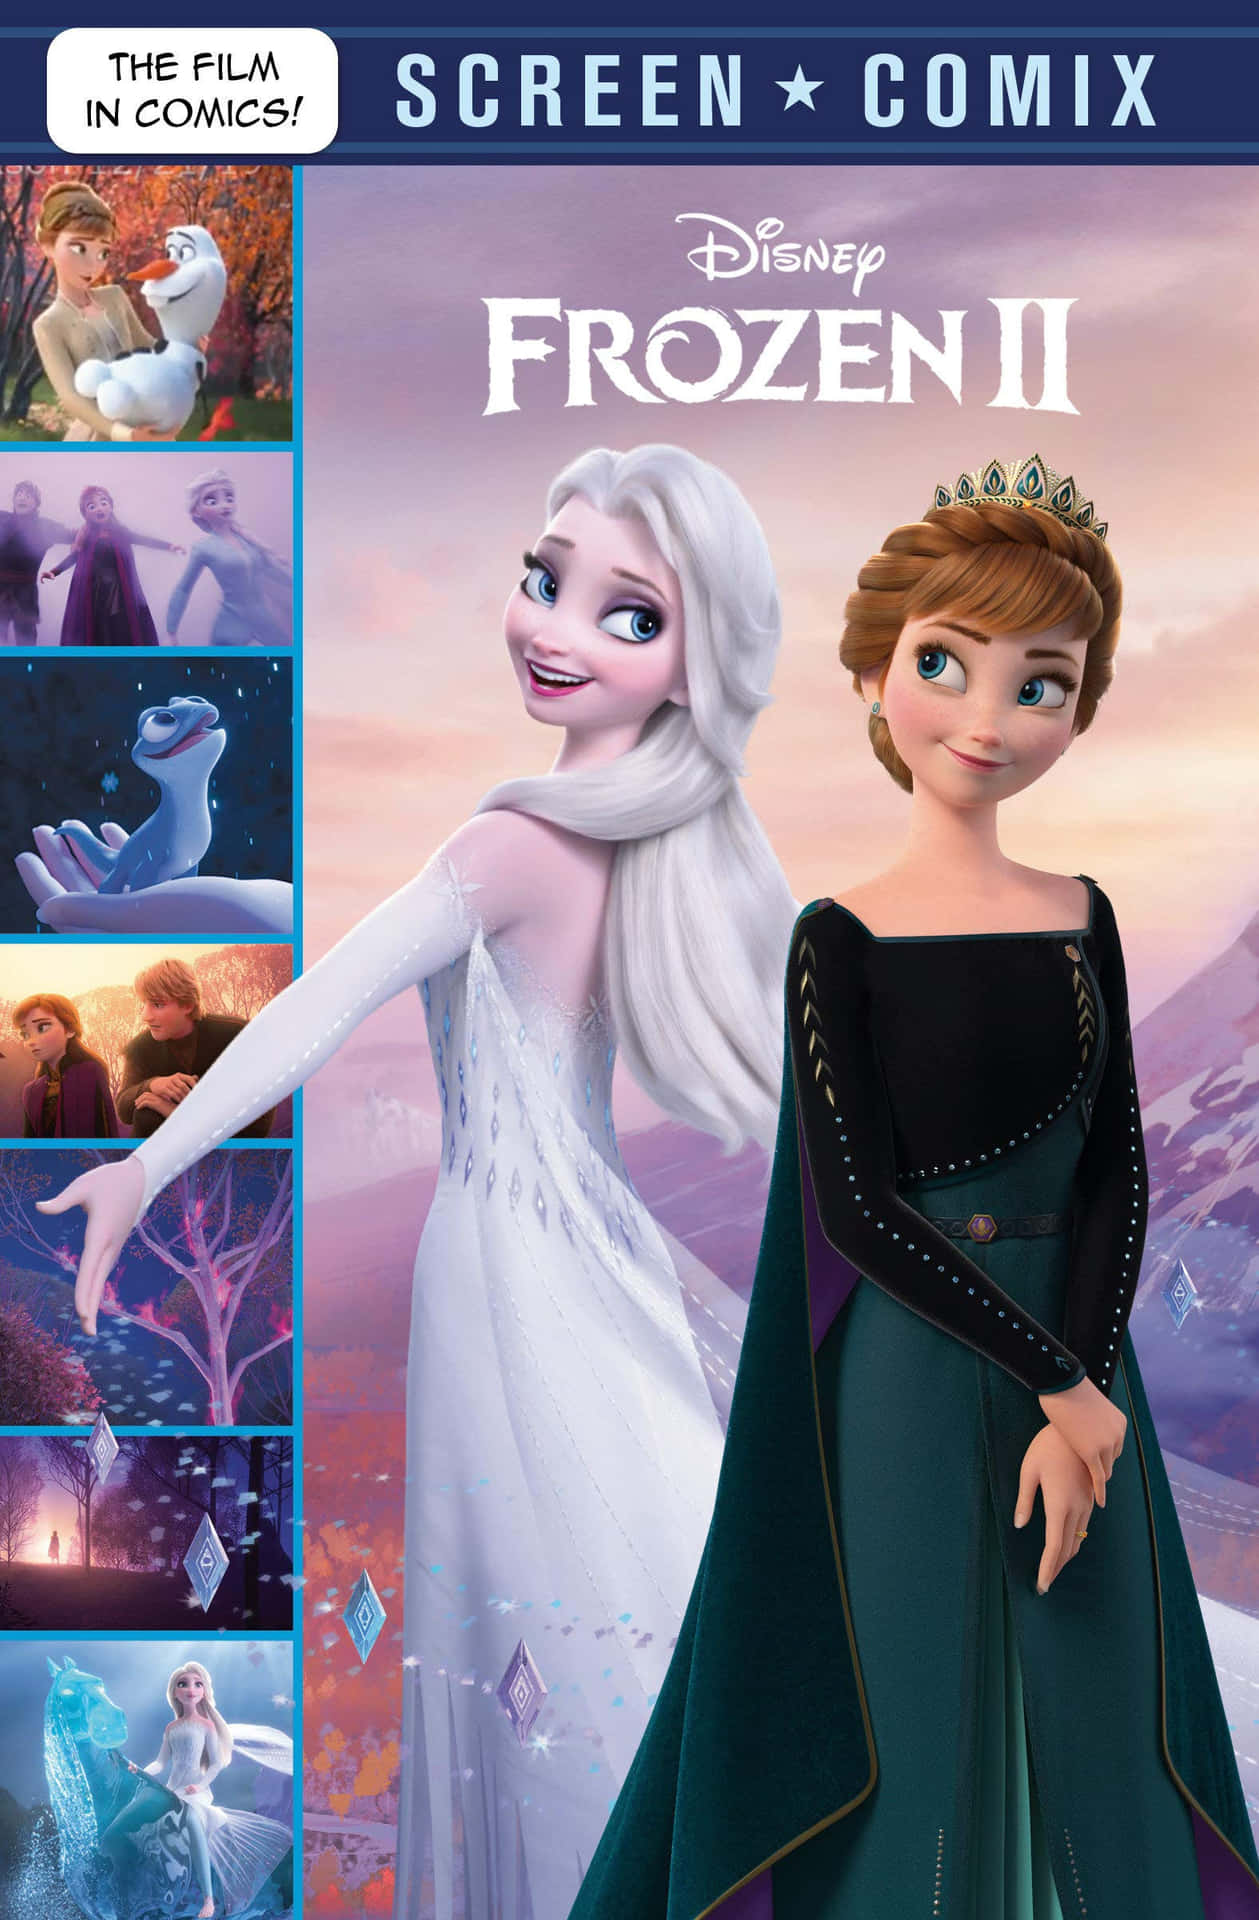 Imagende Cómics De Pantalla De Disney Frozen.